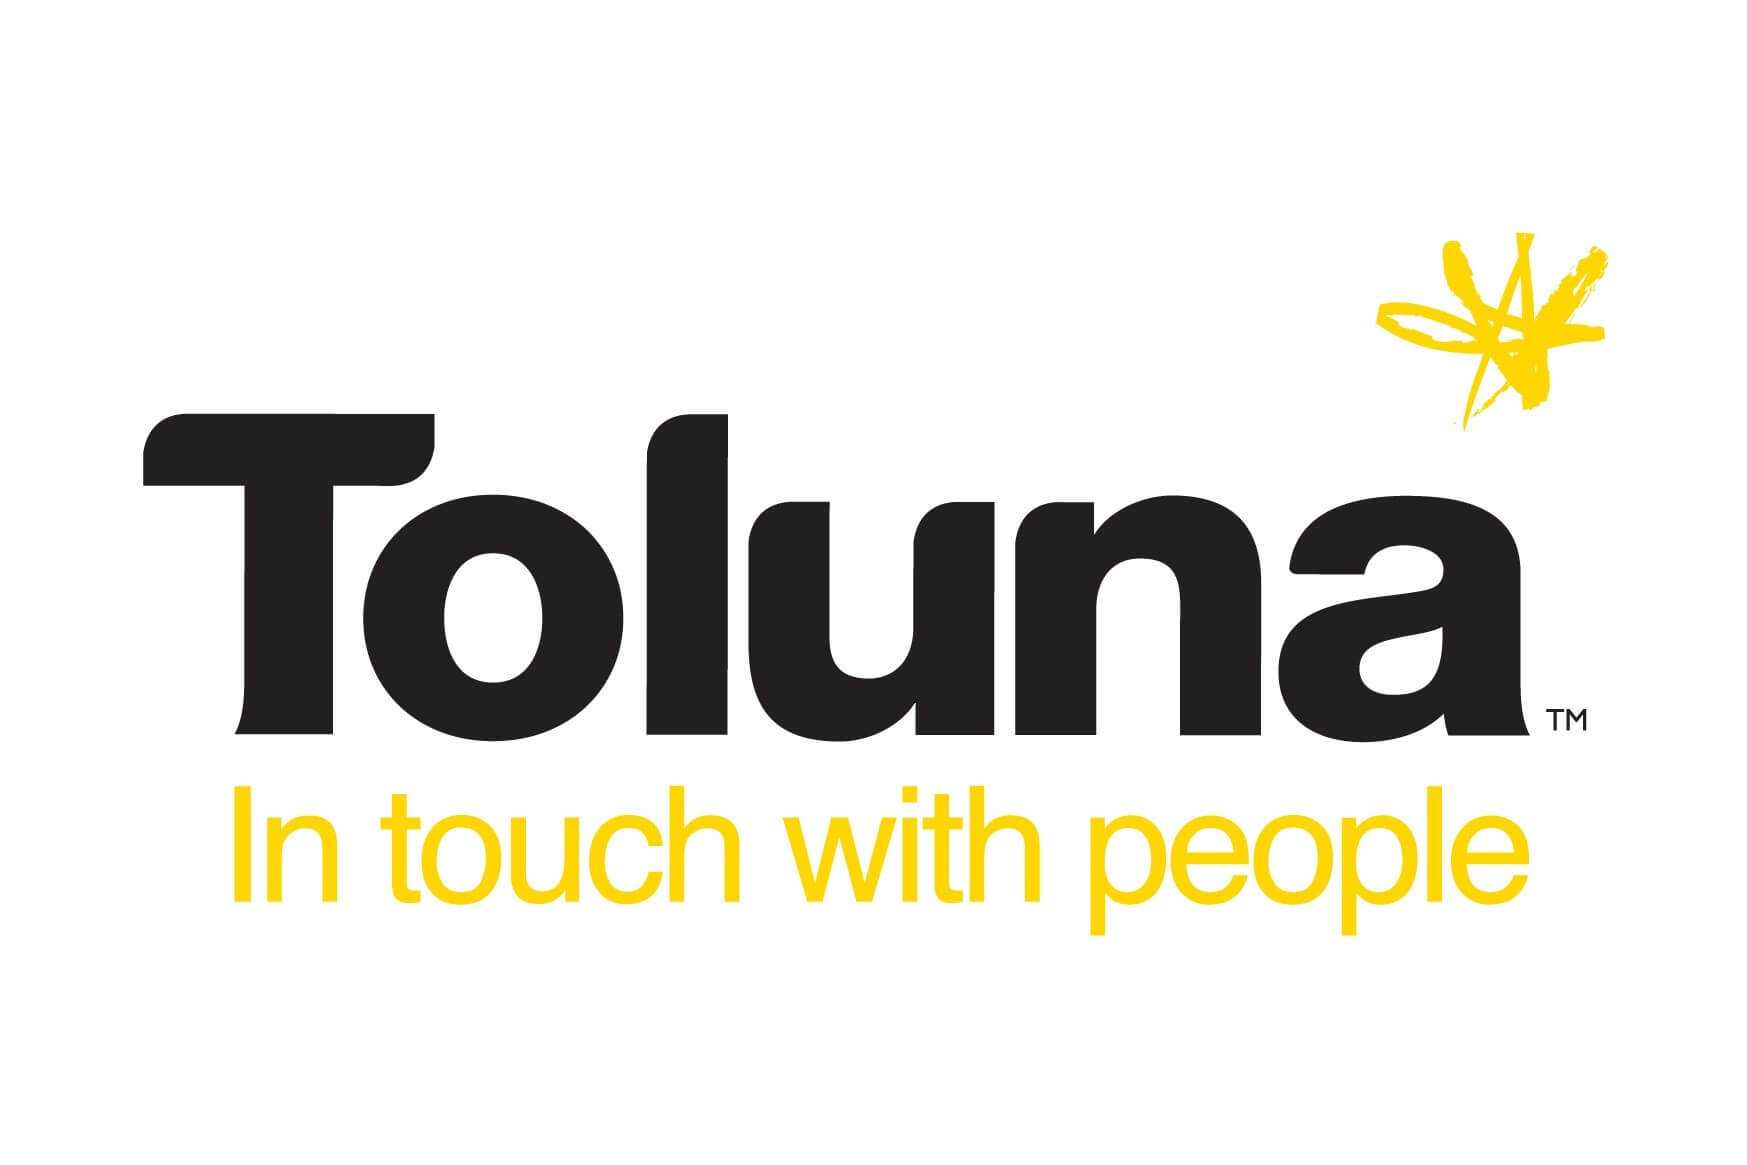 ทำความรู้จักกับ toluna ช่องทางทำแบบสอบถามได้เงินผ่านทางออนไลน์ล่าสุด